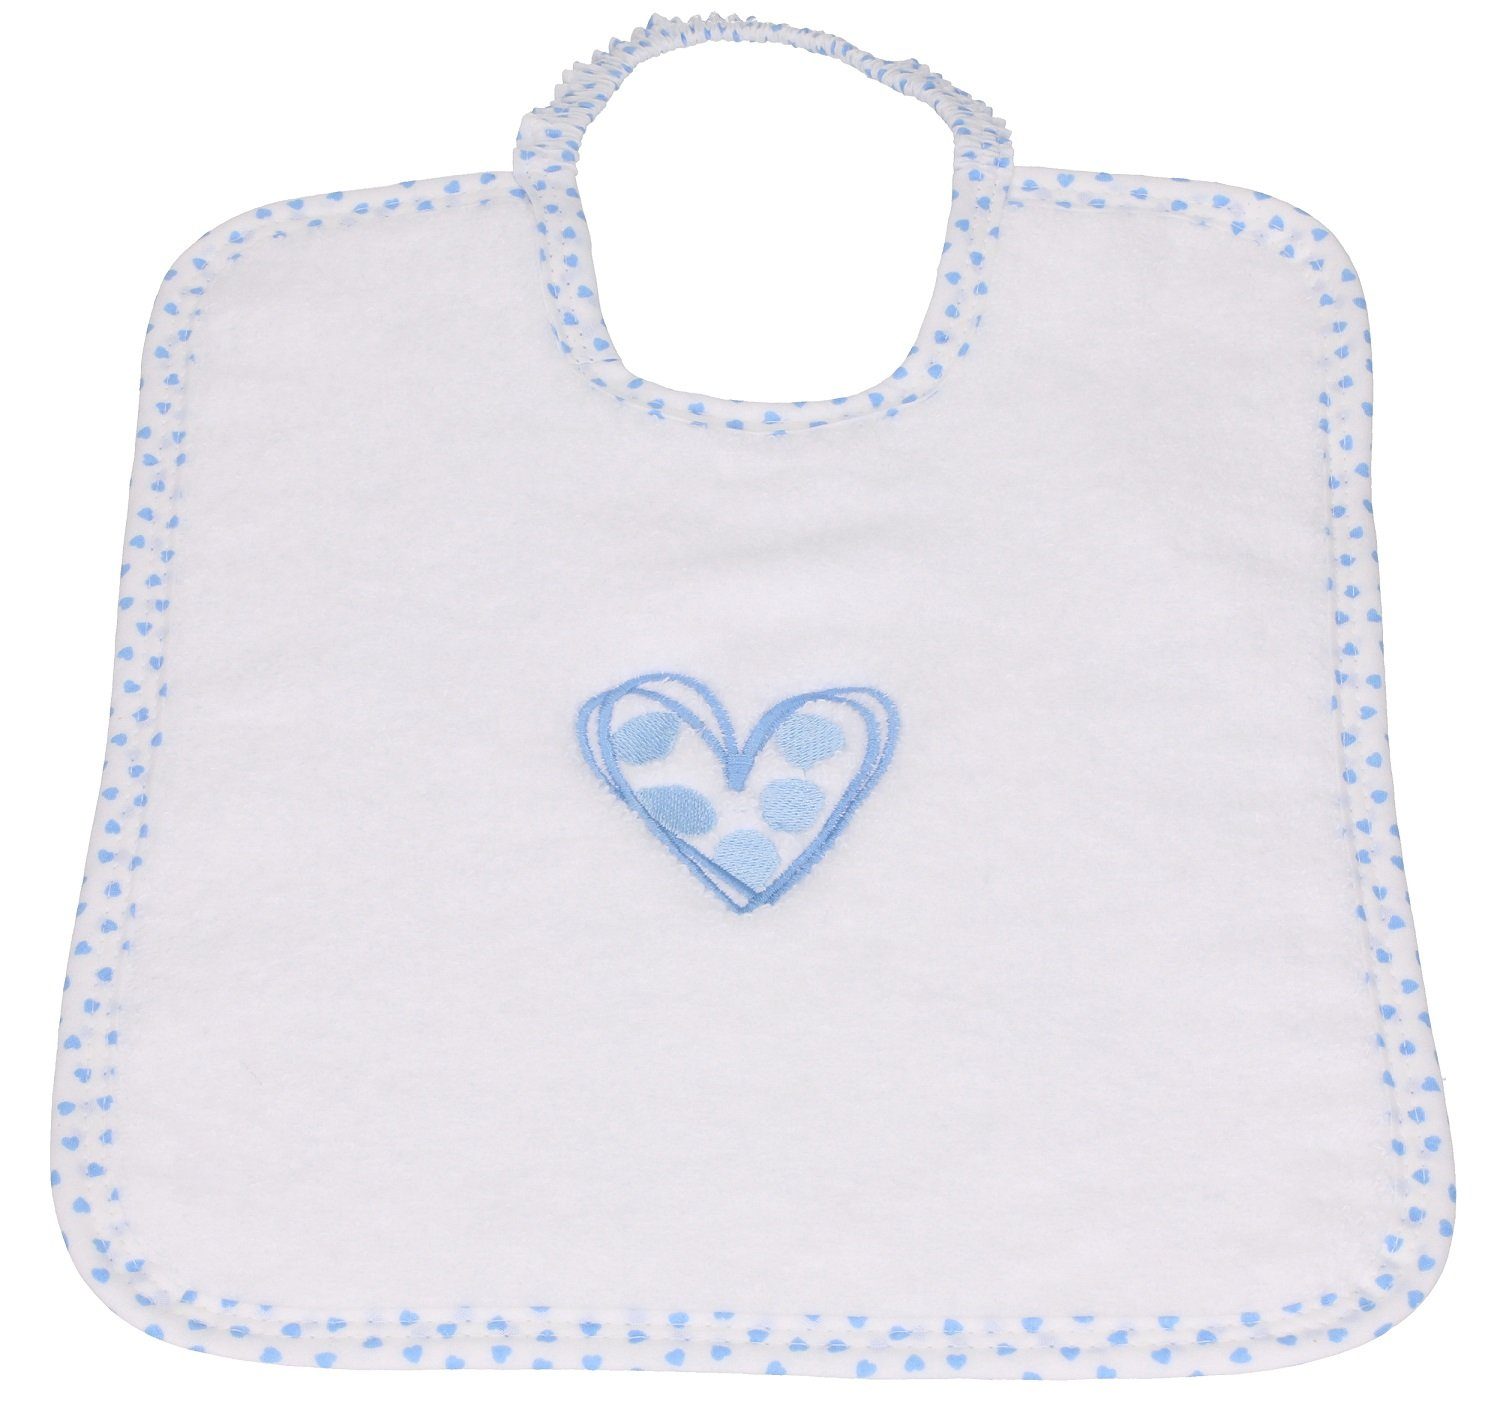 Betz Kapuzenhandtuch 3tlg. Babyset Baumwolle Waschhandschuh, Kinderbadetuch weiß-blau 100% 1 Lätzchen 1 Herzchen 1